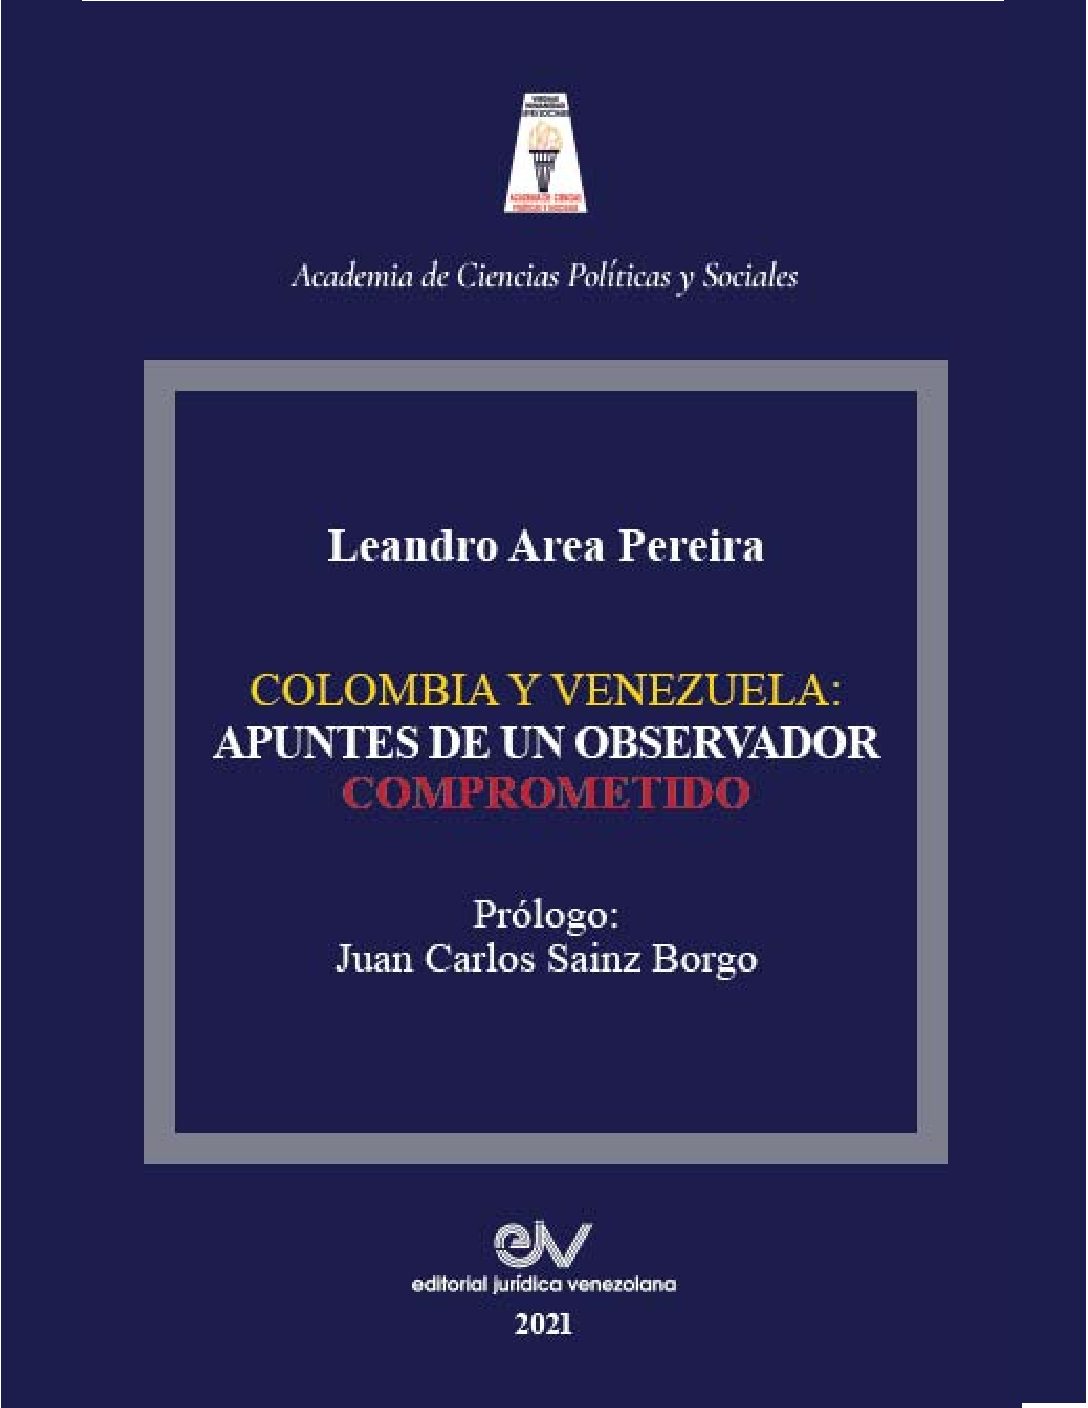 Disponible a texto completo el libro: Colombia y Venezuela: apuntes de un observador comprometido. Autor: Prof. Leandro Area Pereira